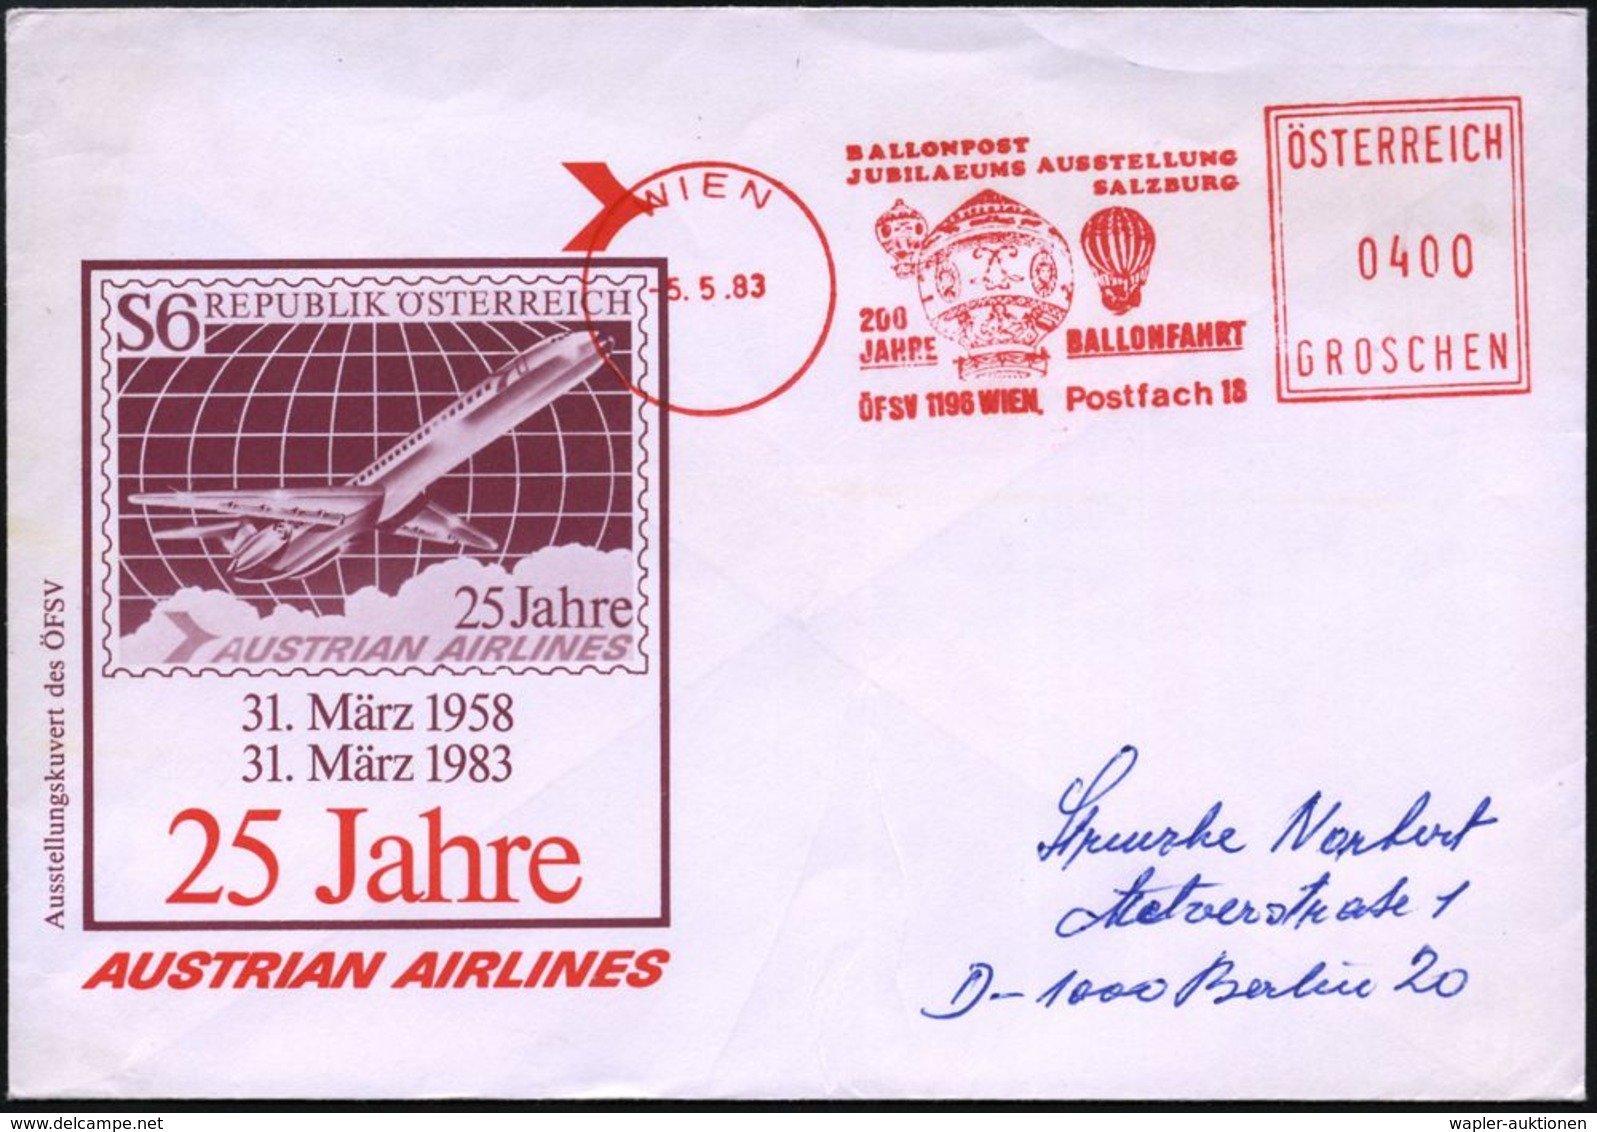 BALLON / BALLON-FELDPOST : ÖSTERREICH 1983 (5.5.) AFS.: WIEN/BALLONPOST/JUBILAEUMS AUSSTELLUNG/SALZBURG/200 JAHRE BALLON - Airships